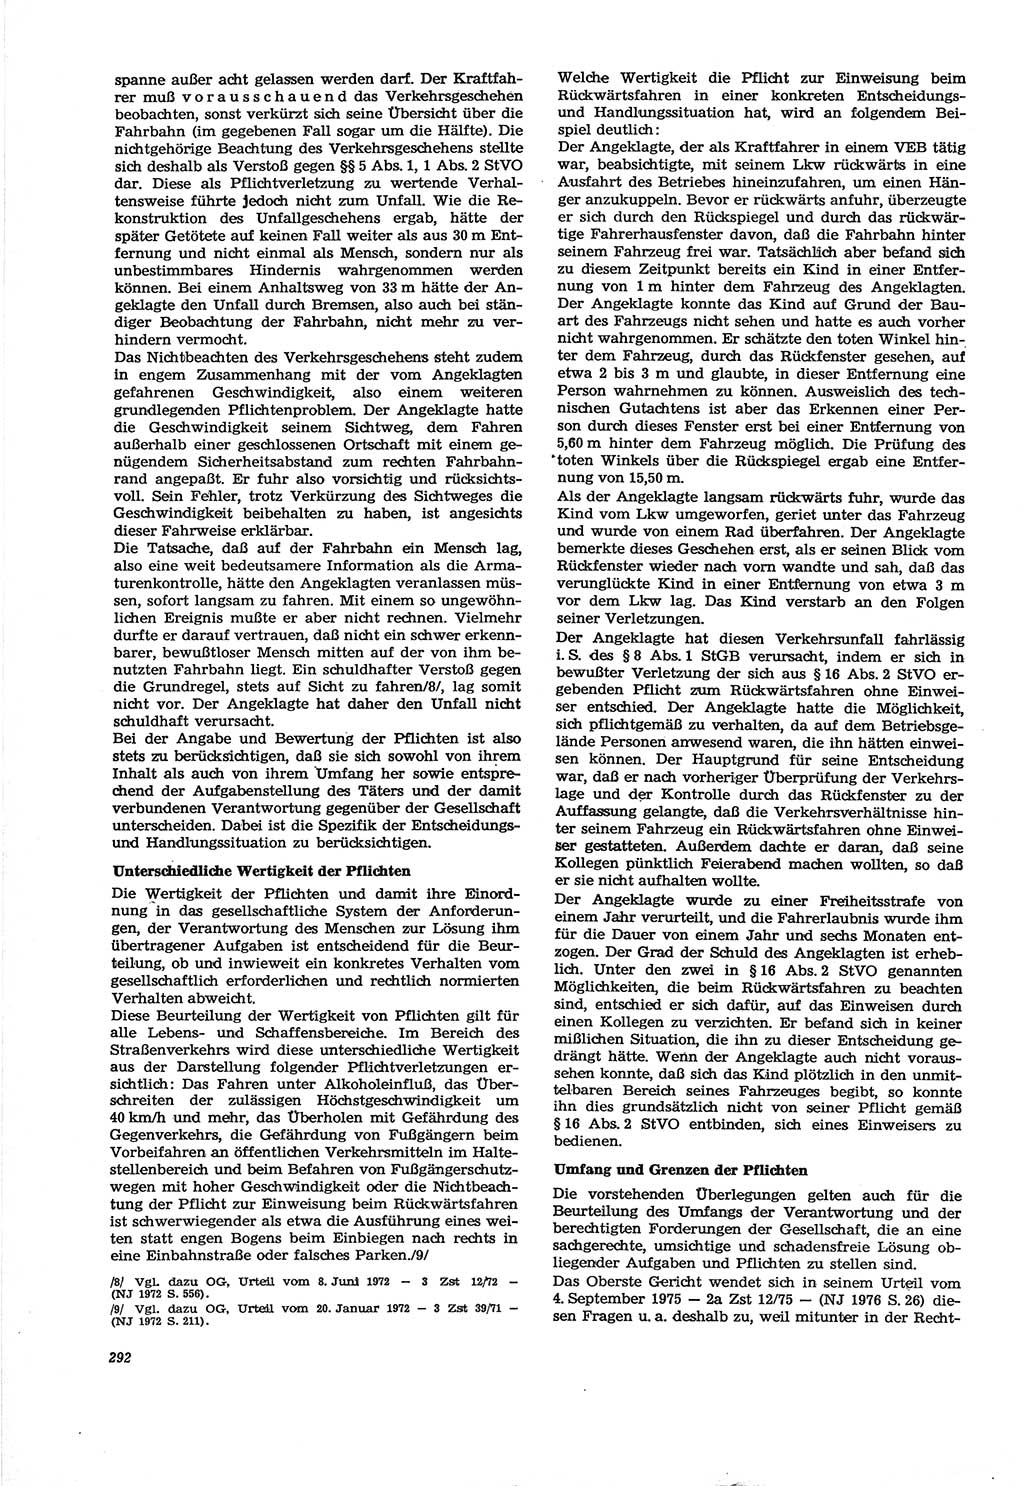 Neue Justiz (NJ), Zeitschrift für Recht und Rechtswissenschaft [Deutsche Demokratische Republik (DDR)], 30. Jahrgang 1976, Seite 292 (NJ DDR 1976, S. 292)